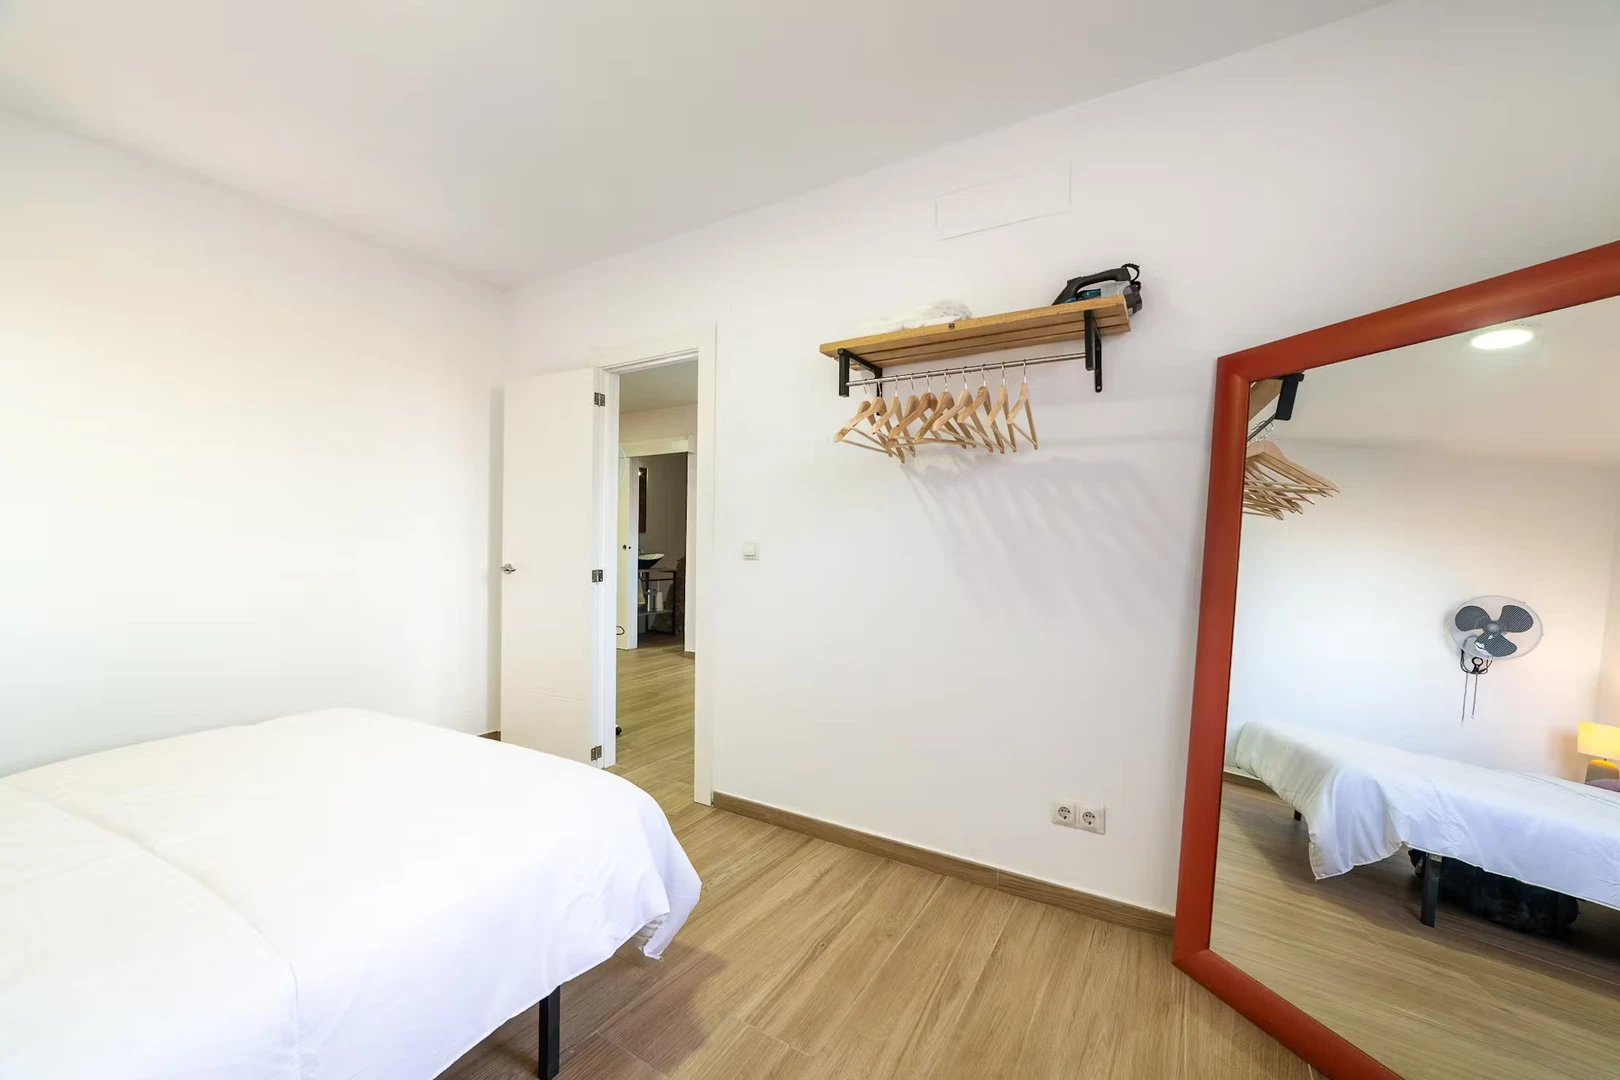 Monatliche Vermietung von Zimmern in Almería